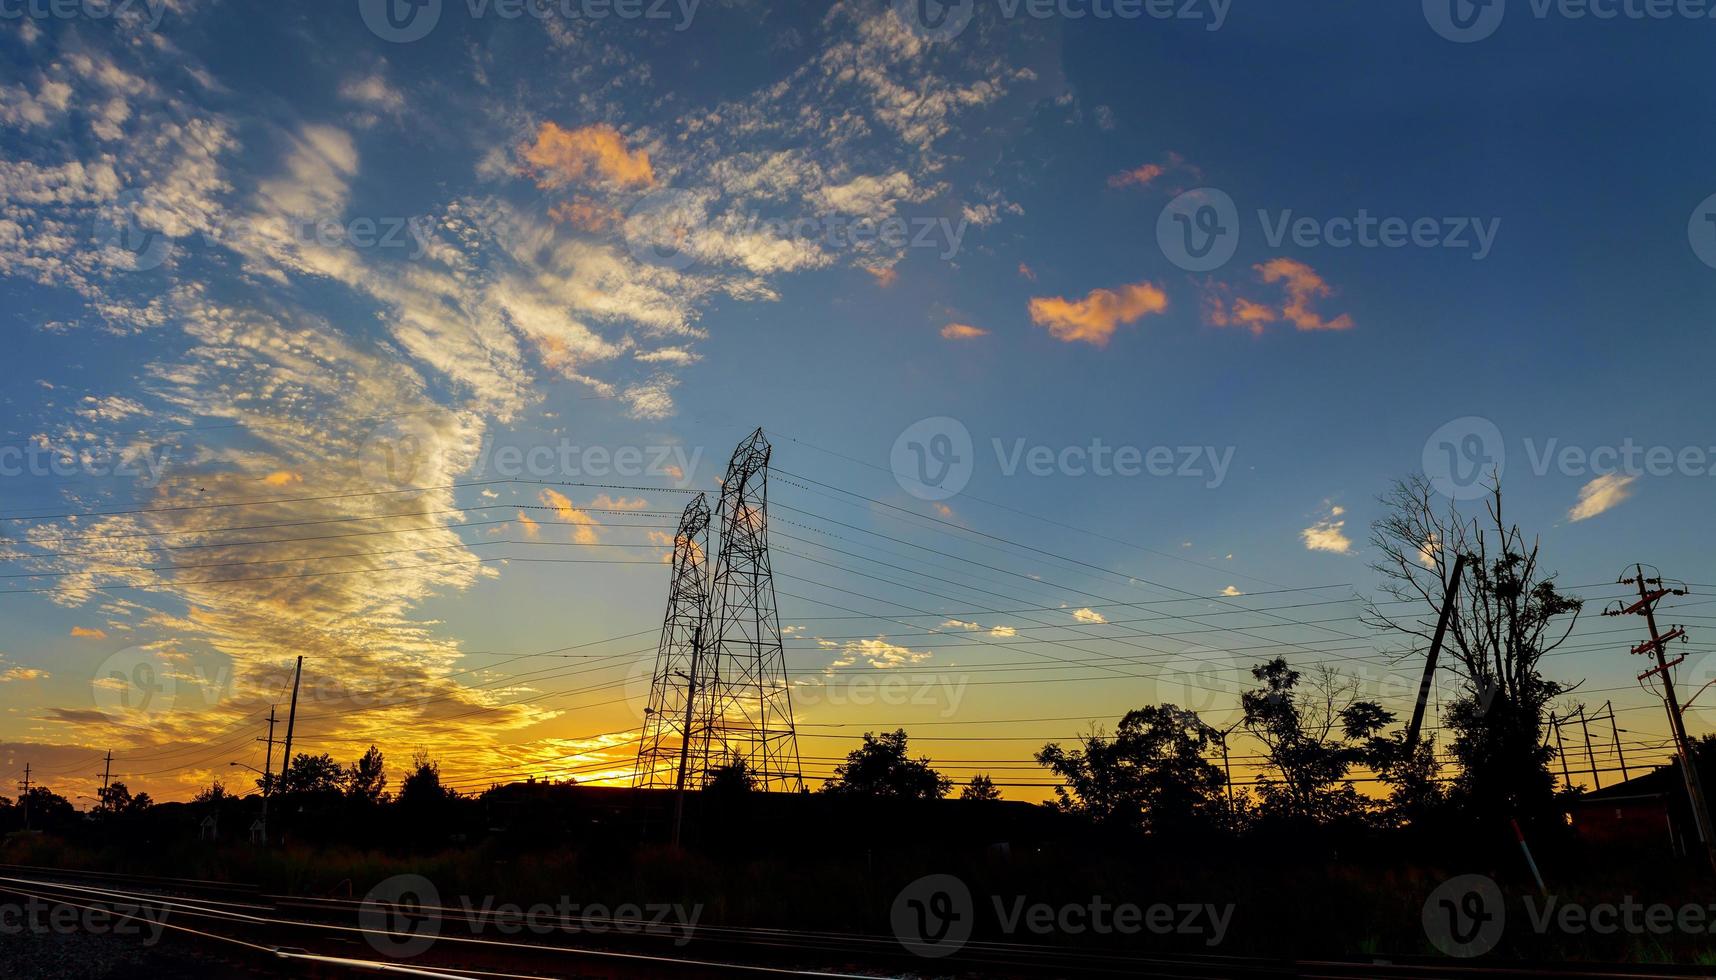 högspänningsledningar i solnedgångsscenen skymning foto